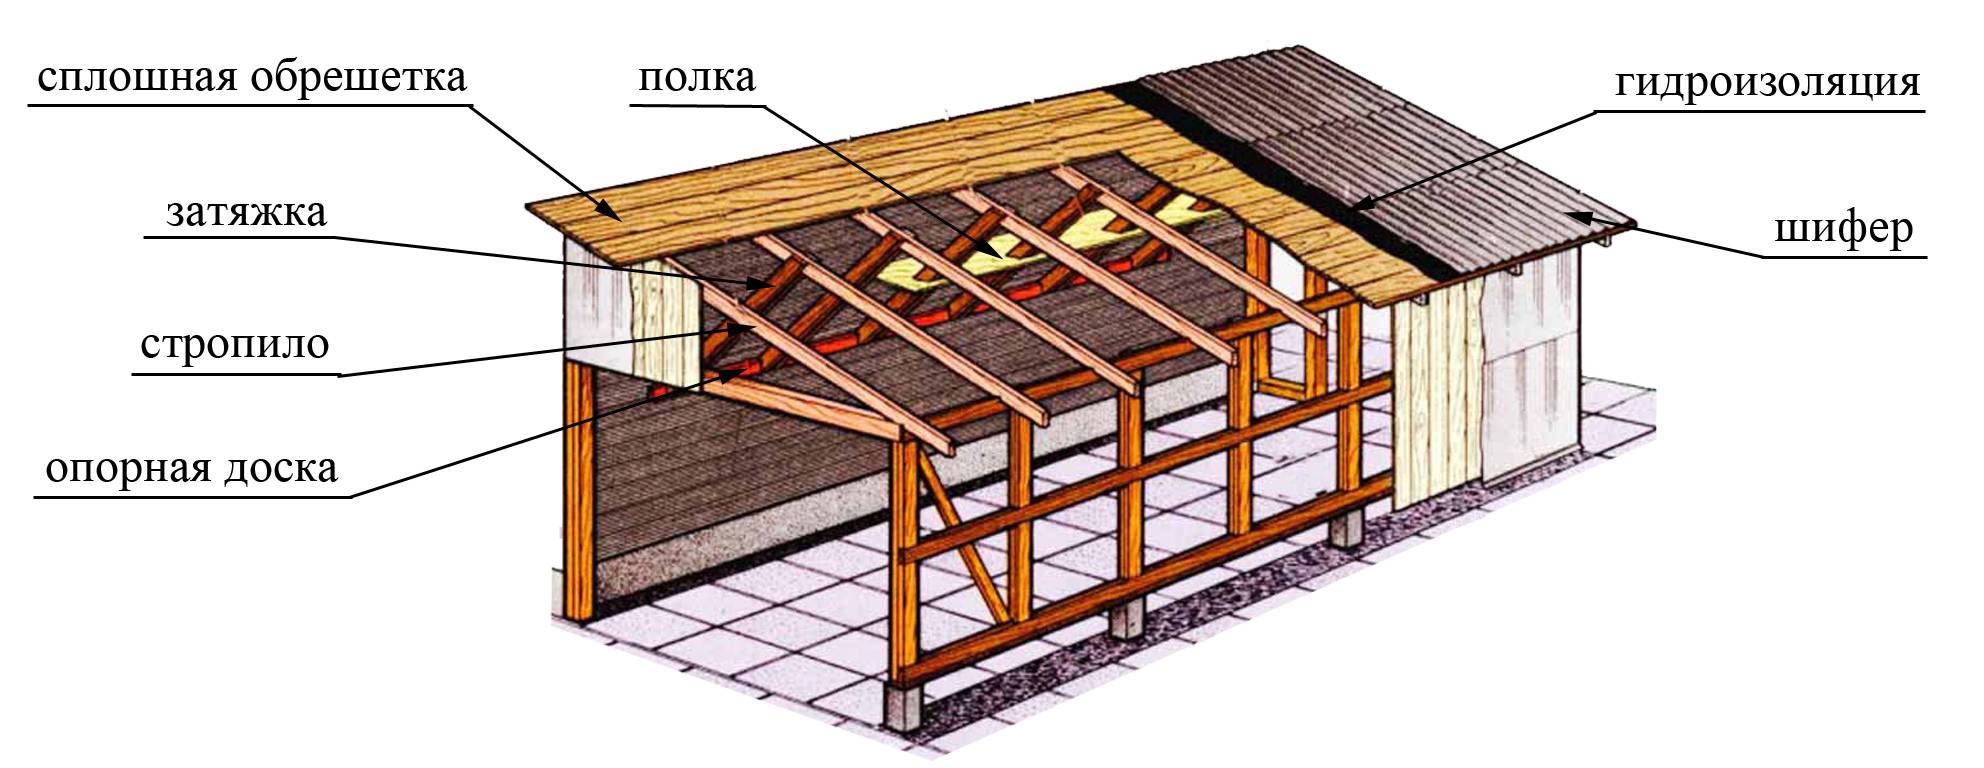 Как покрыть крышу гаража профнастилом своими руками? монтаж обрешётки и крепление листов